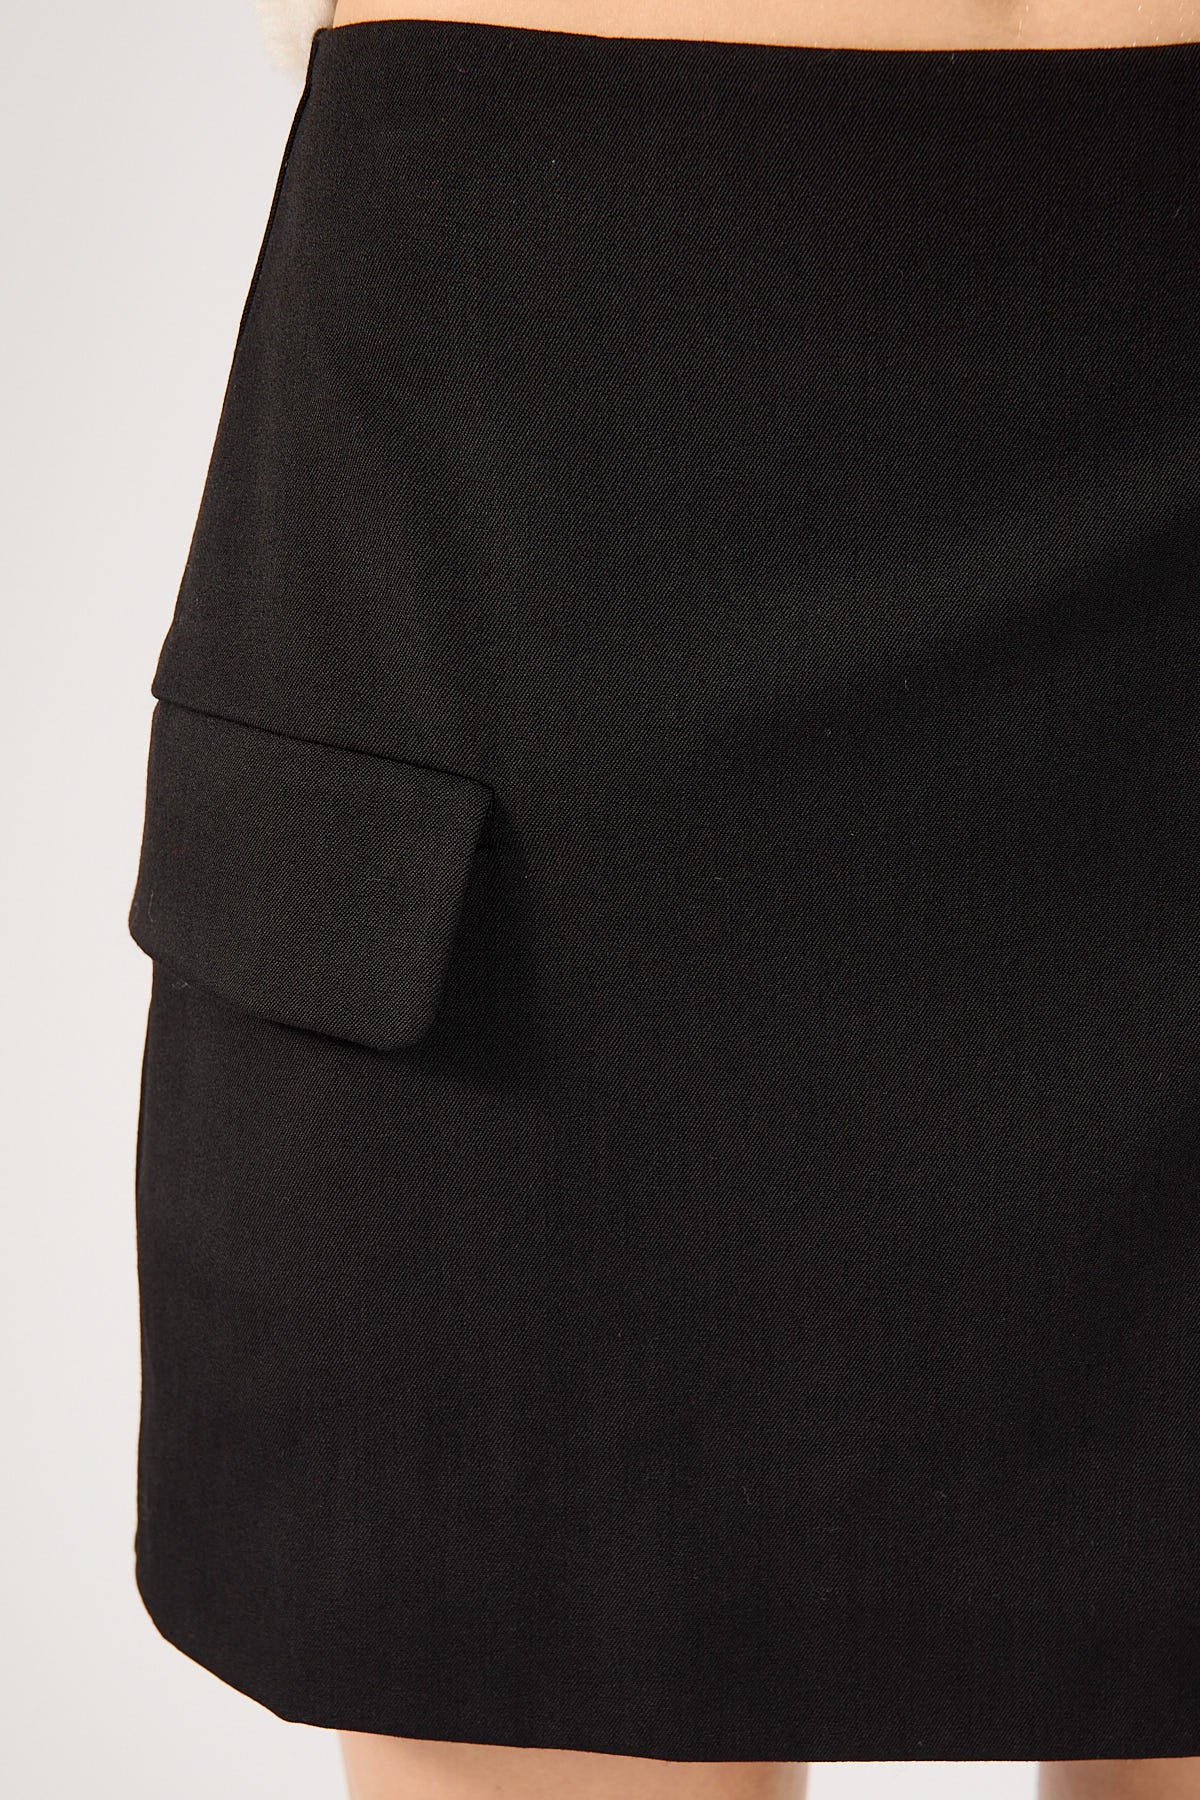 Perfect Stranger Maeve Tailored Mini Skirt Black